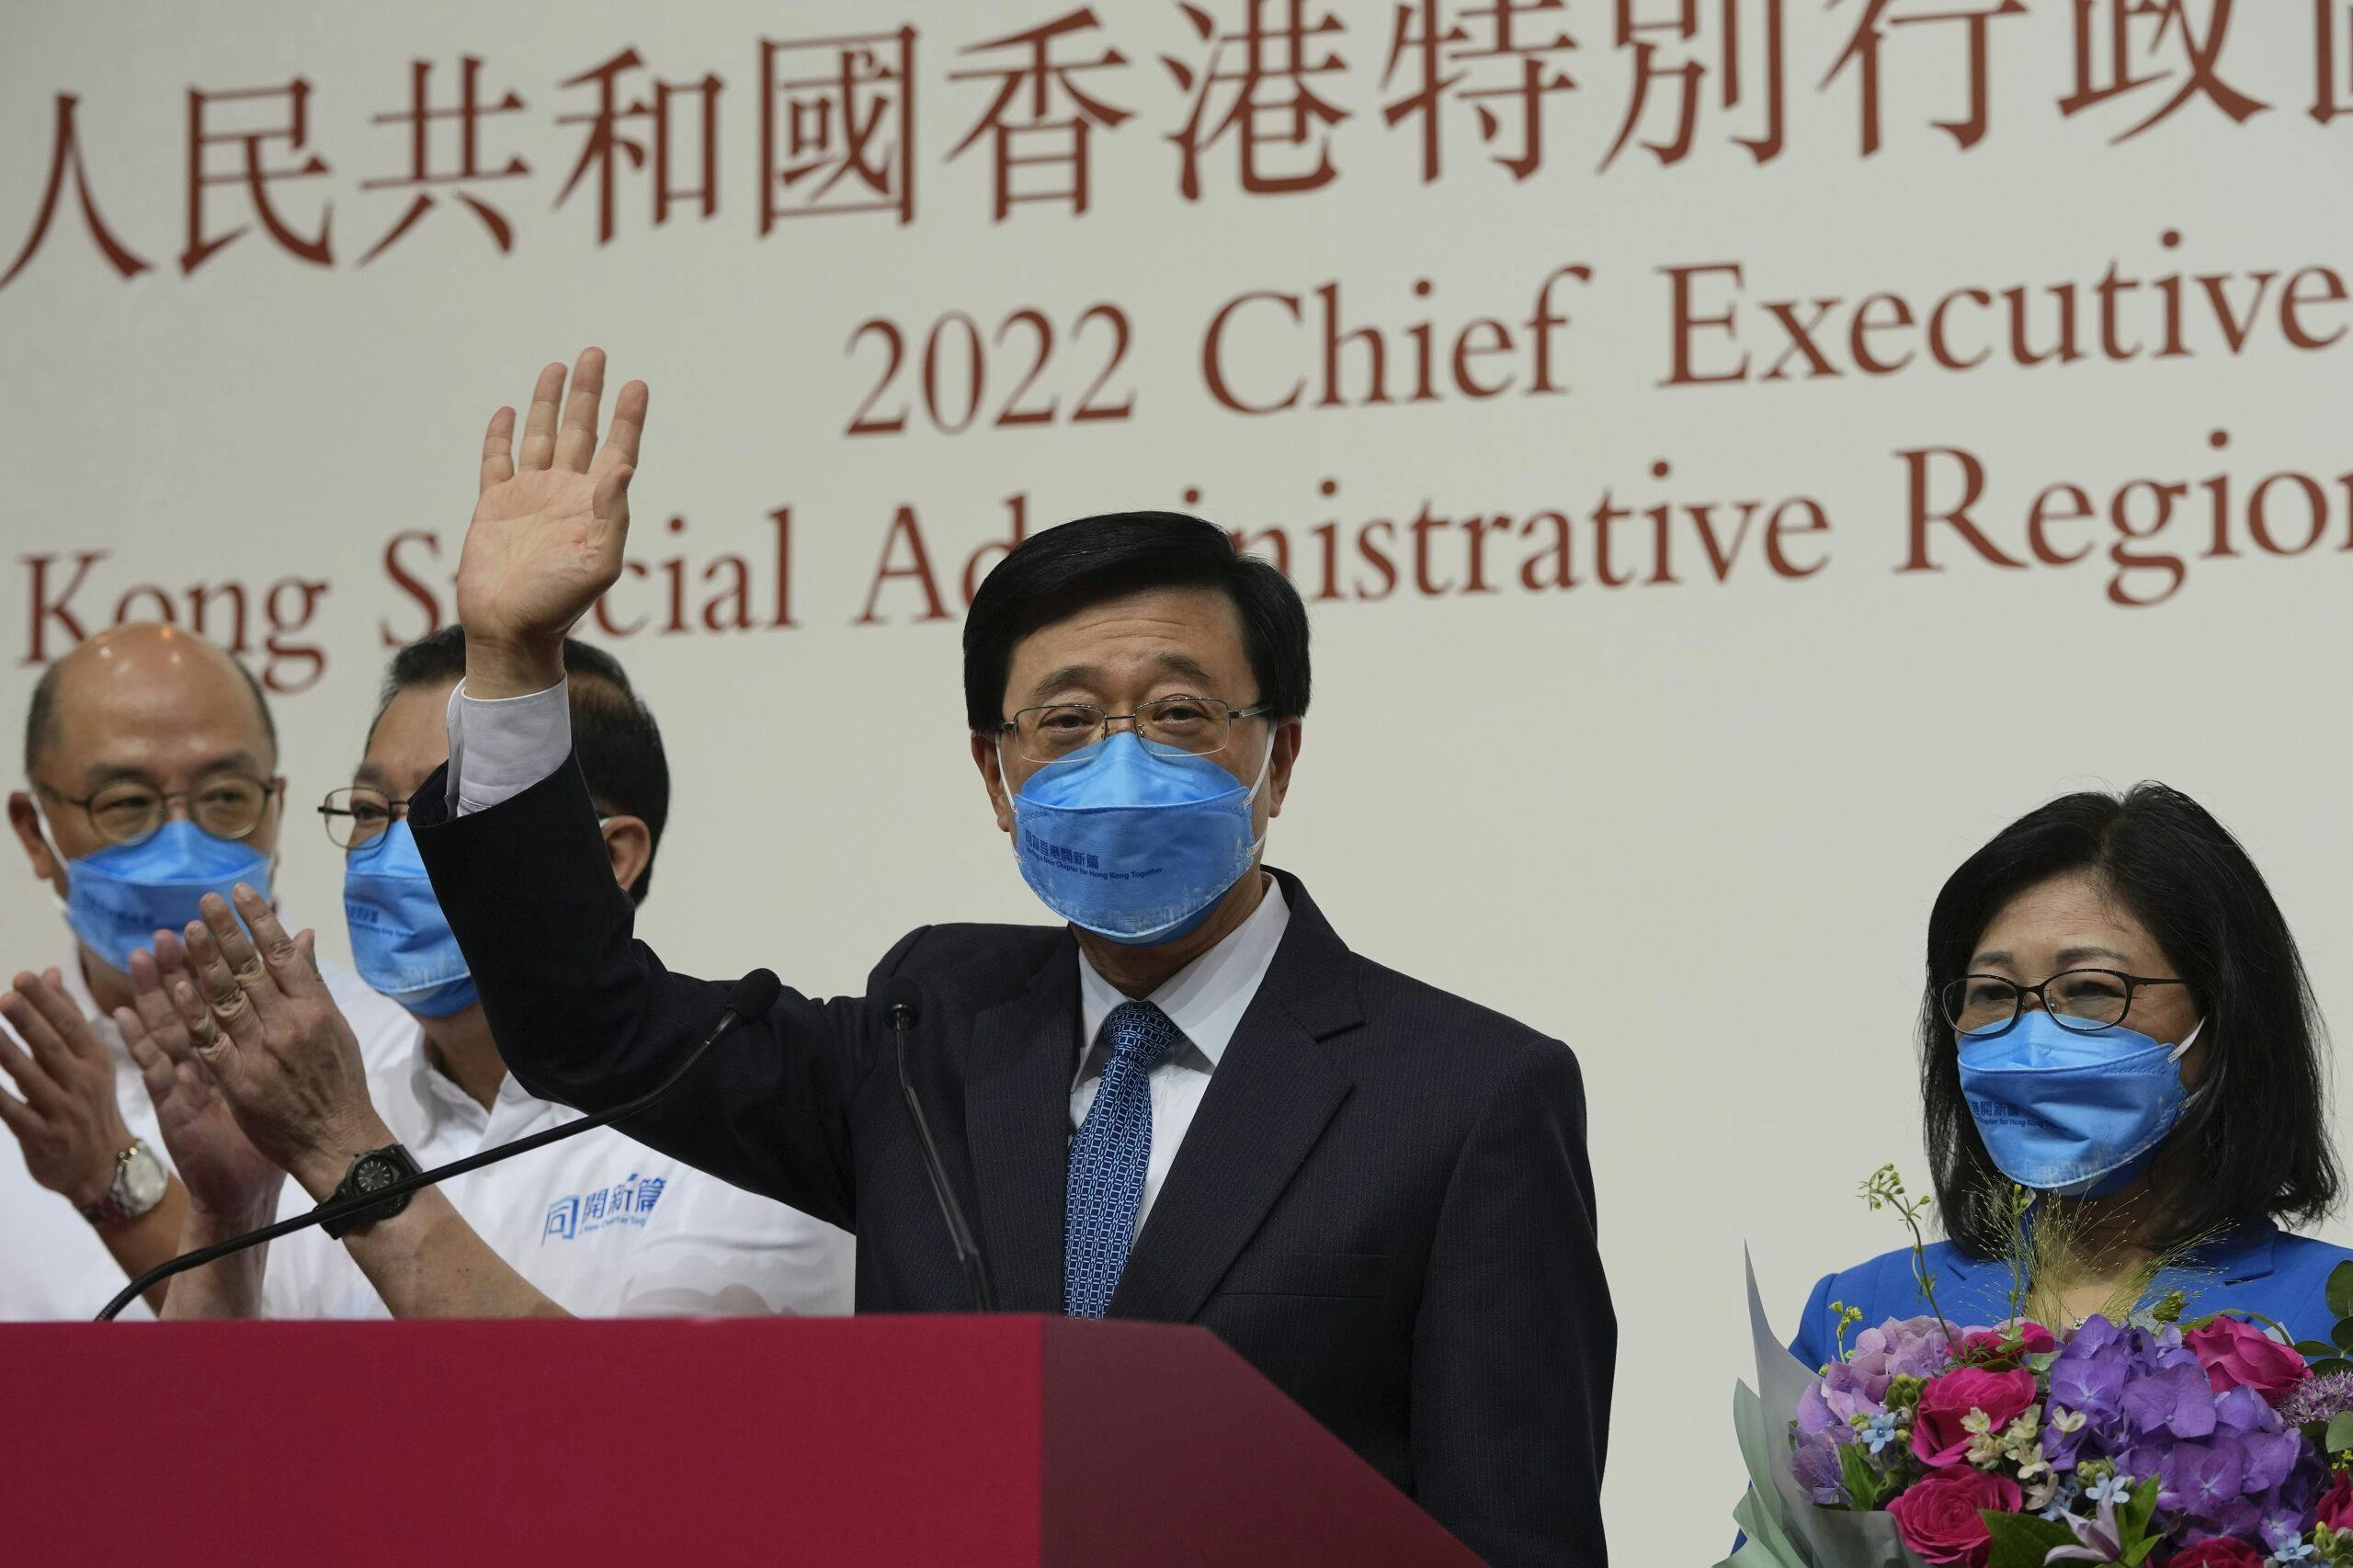 John Lee elected as new leader of Hong Kong